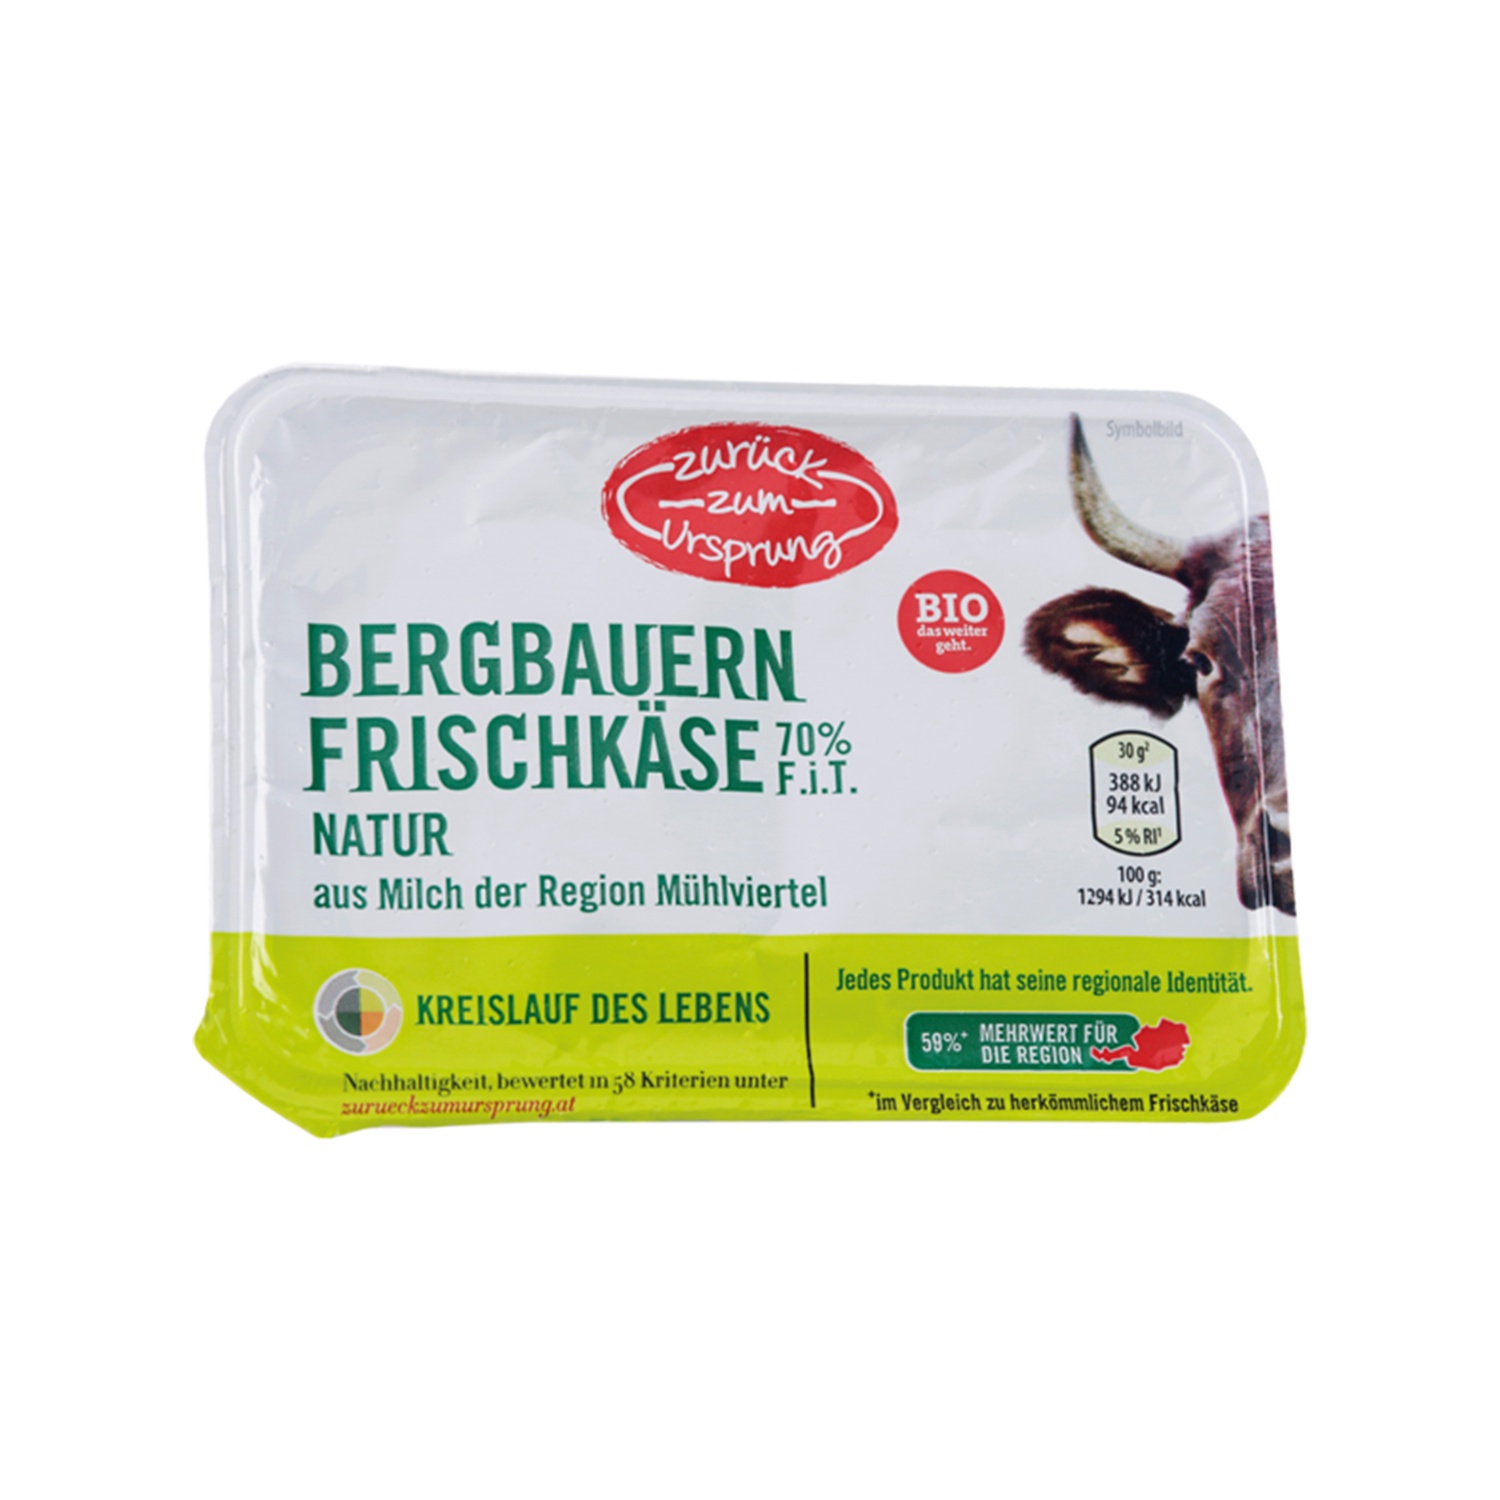 ZURÜCK ZUM URSPRUNG BIO-Bergbauern Frischkäse, Natur 70% F.i.T.